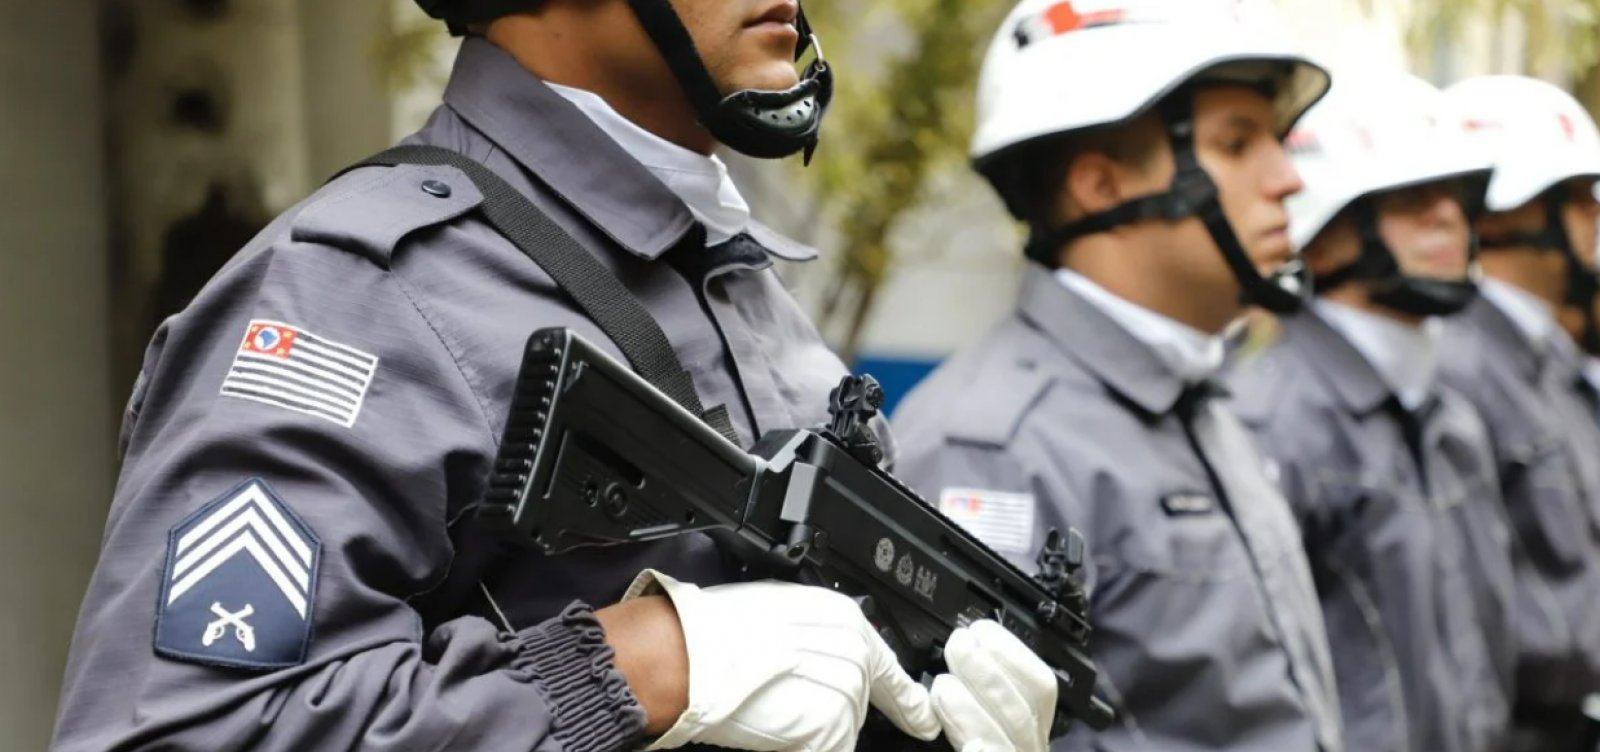 Armamento furtado em Batalhão da PM no interior de SP é encontrado em casa de policial 